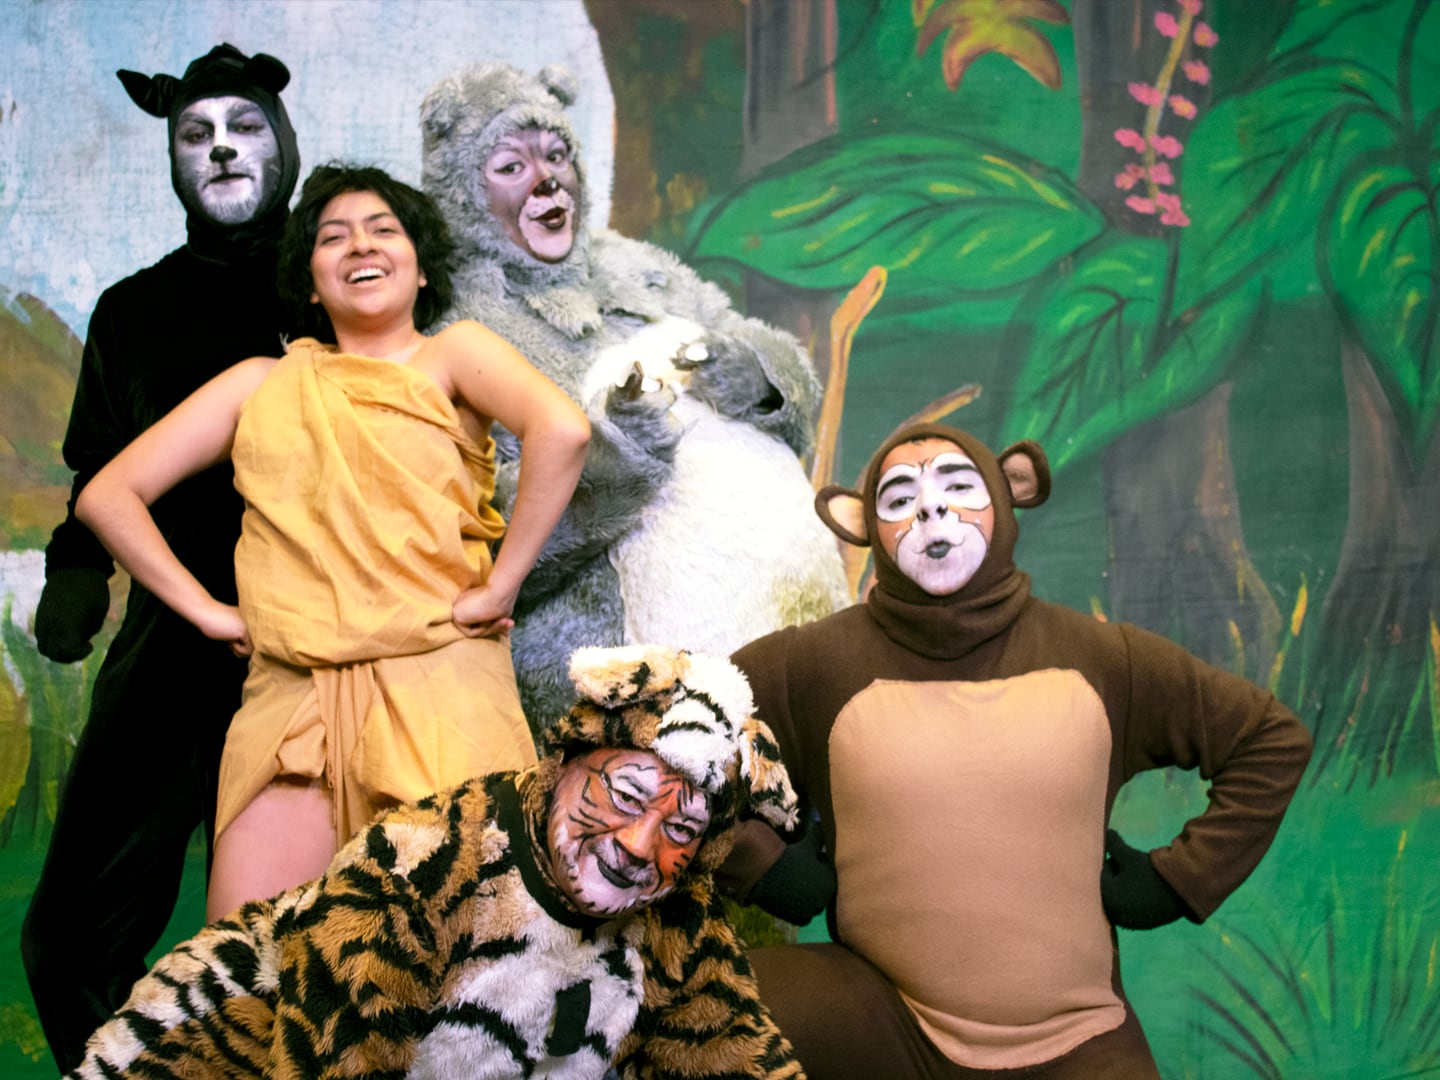 El Libro de la Selva, la aventura de Mowgli - Maribel Mesón - Distribuidora  y Productora de Teatro